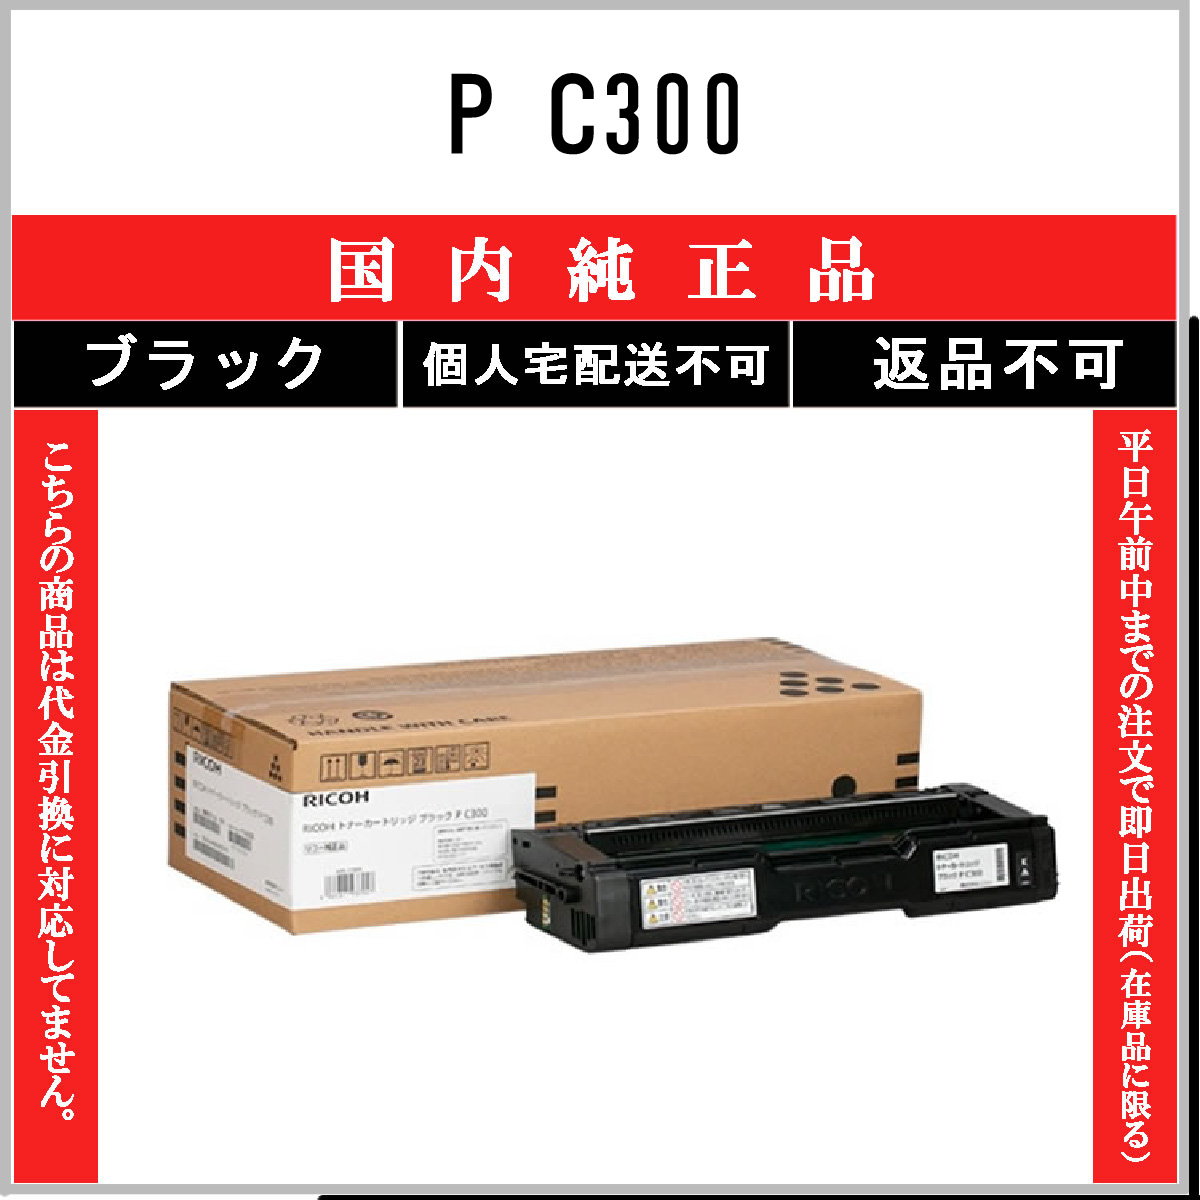 PR-L9600C-18